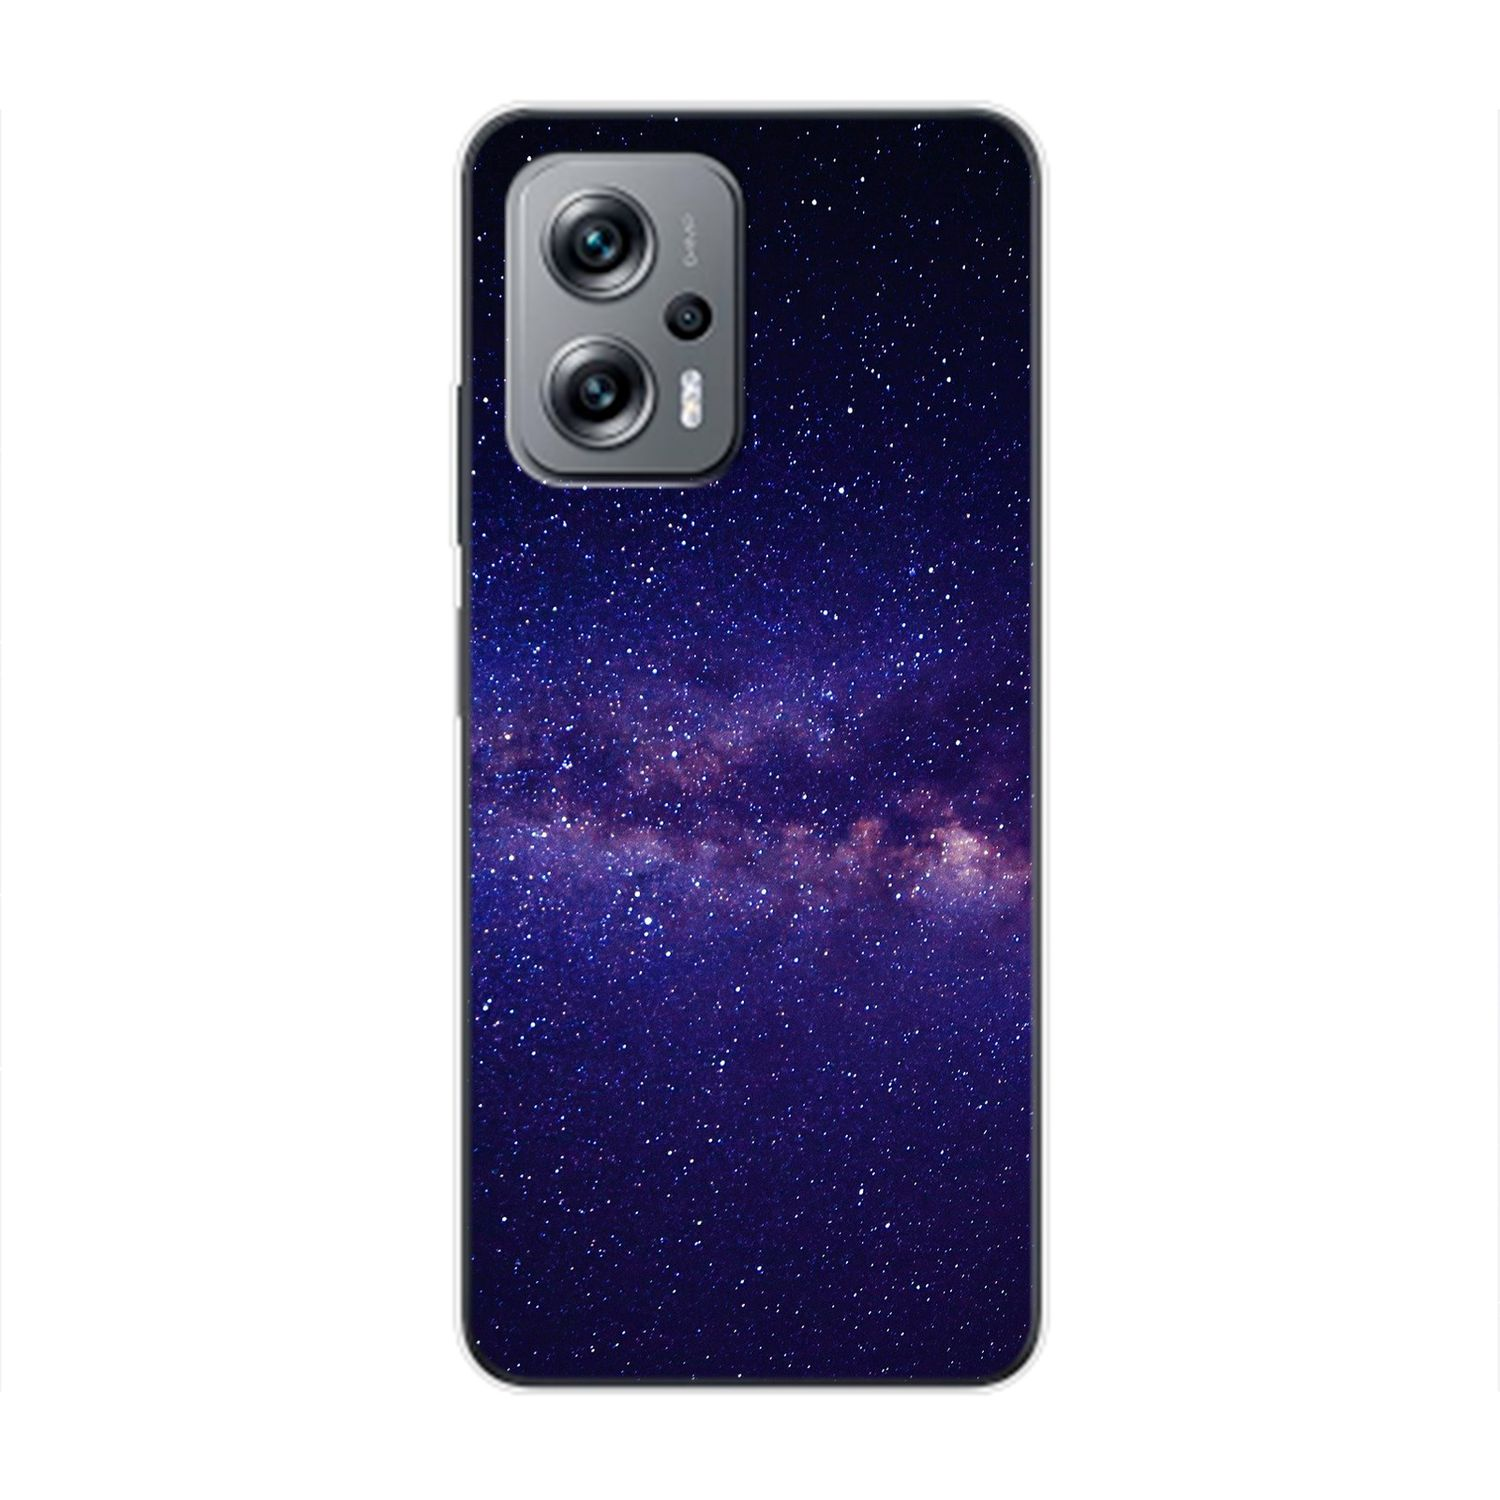 Sternenhimmel Case, Xiaomi, DESIGN K50i, Redmi Backcover, KÖNIG